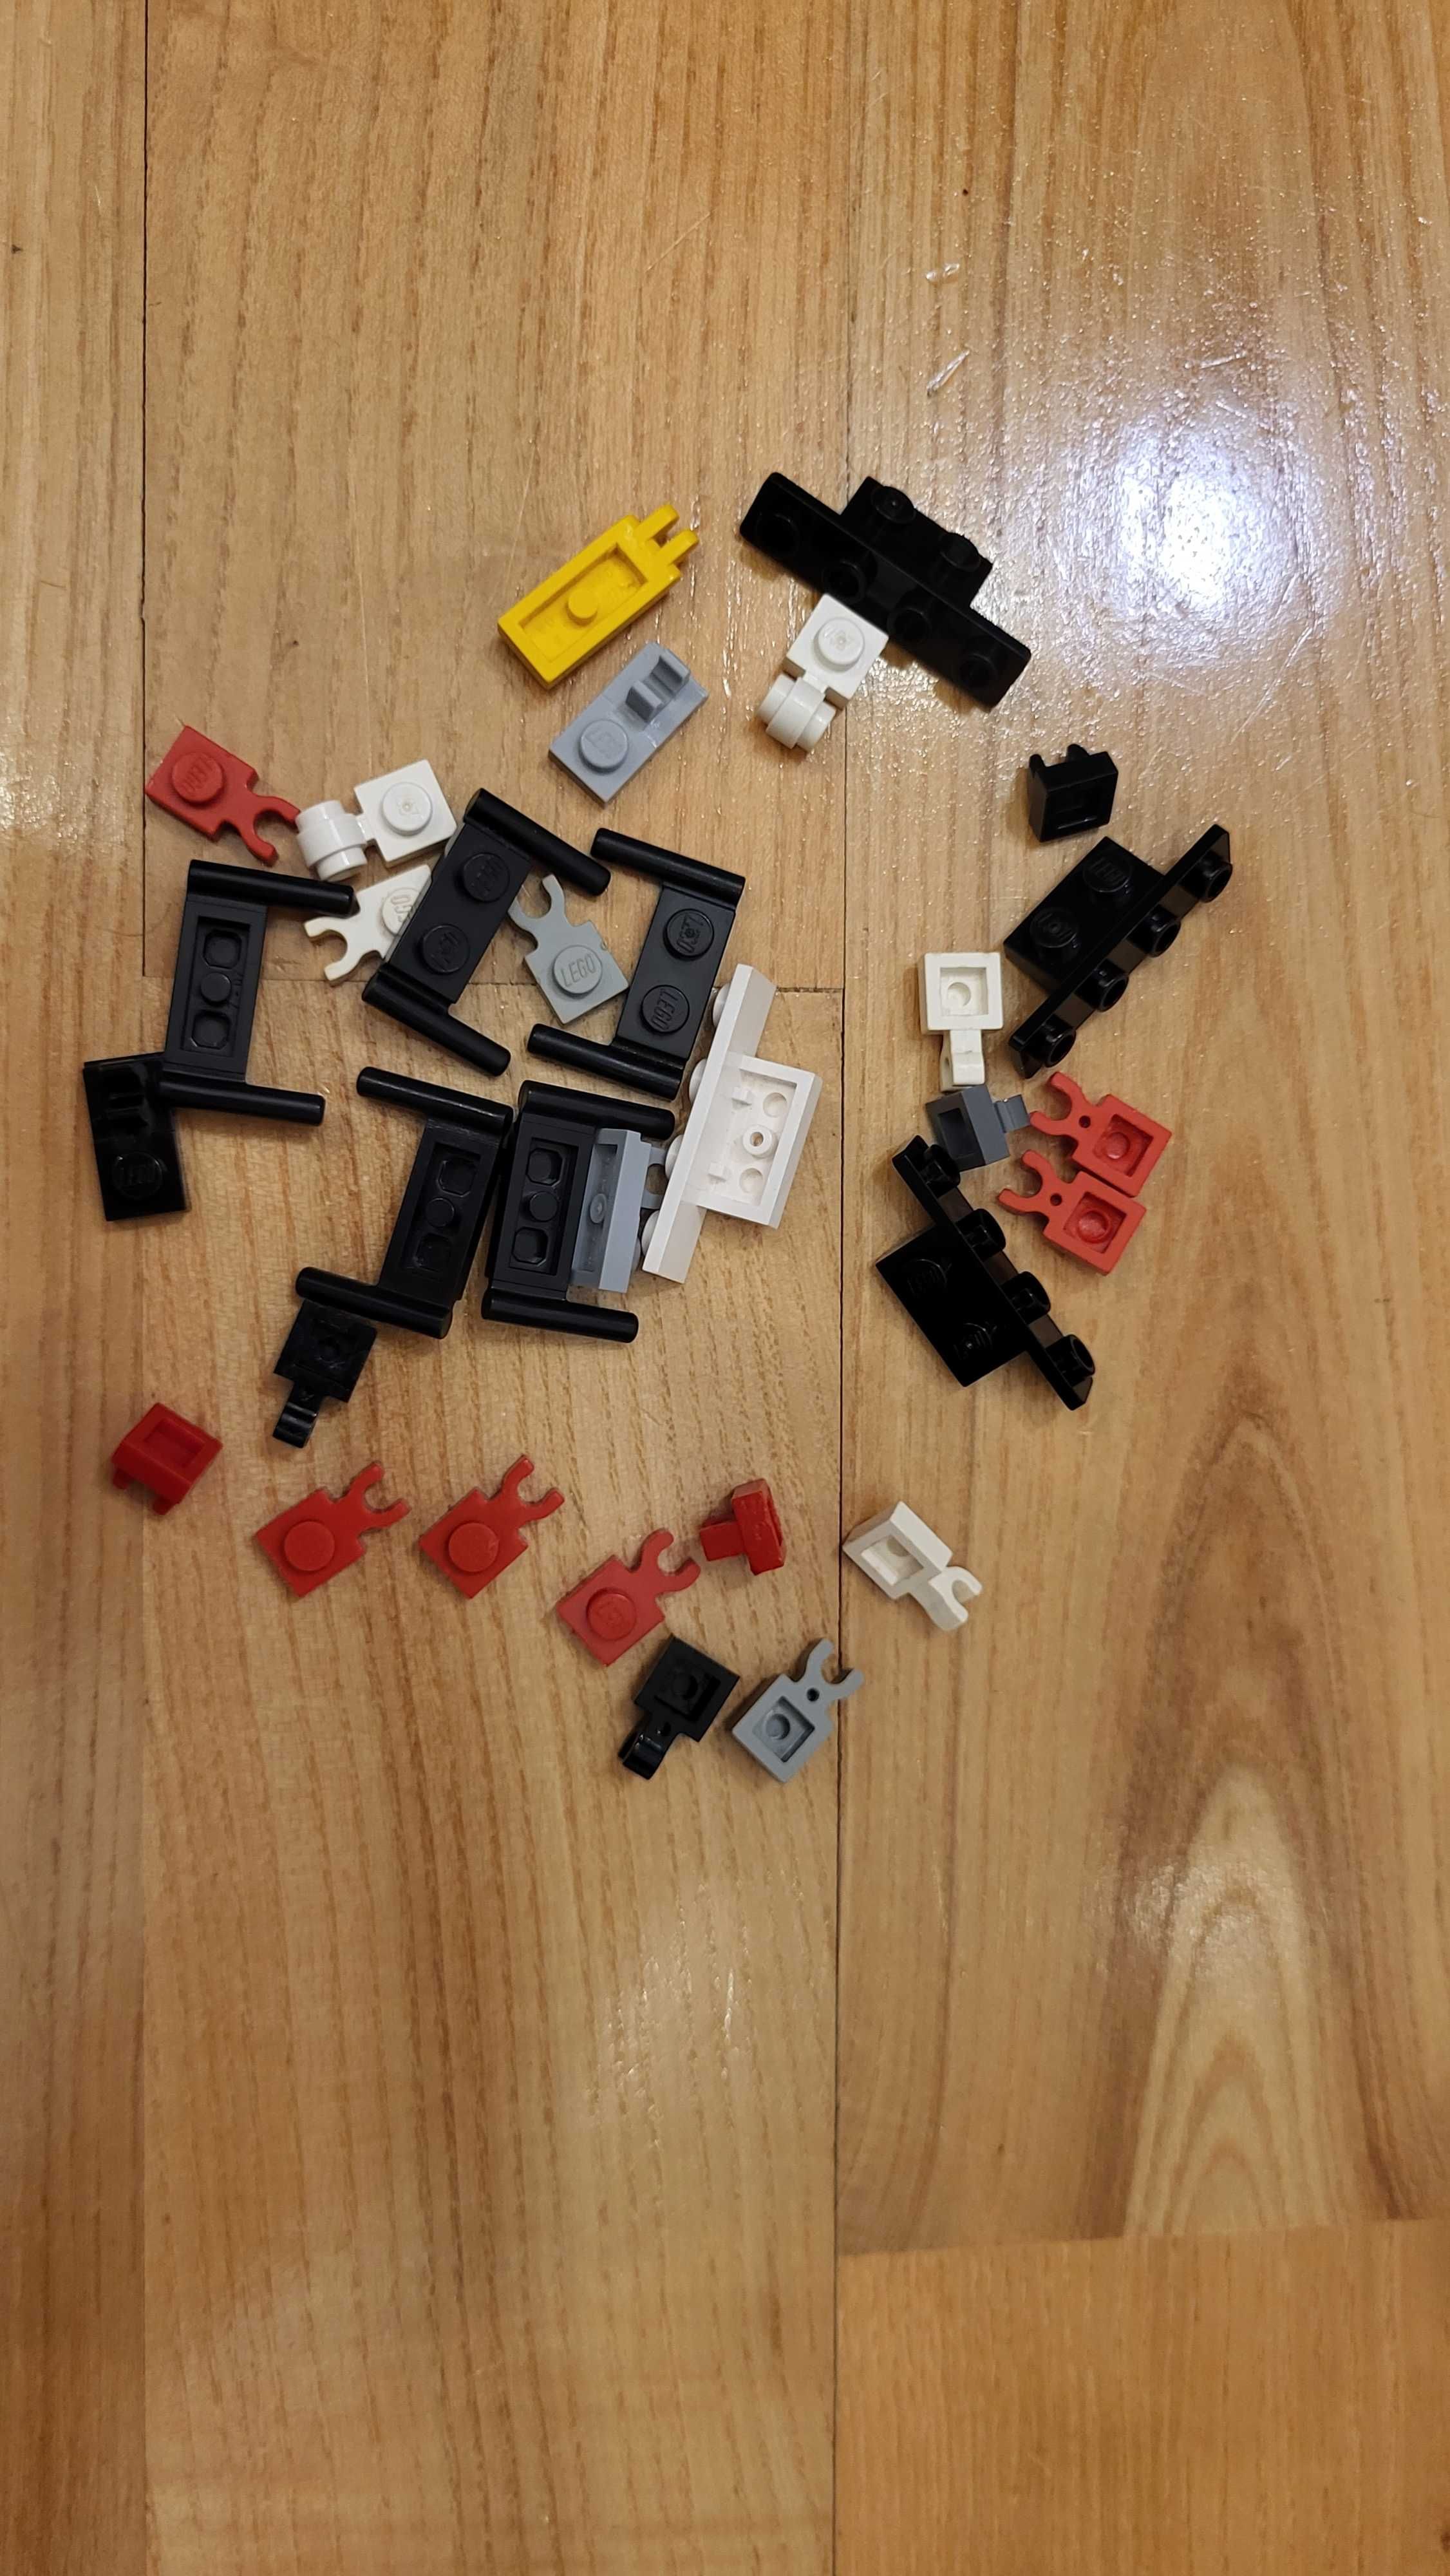 Klocki LEGO nietypowe - różne